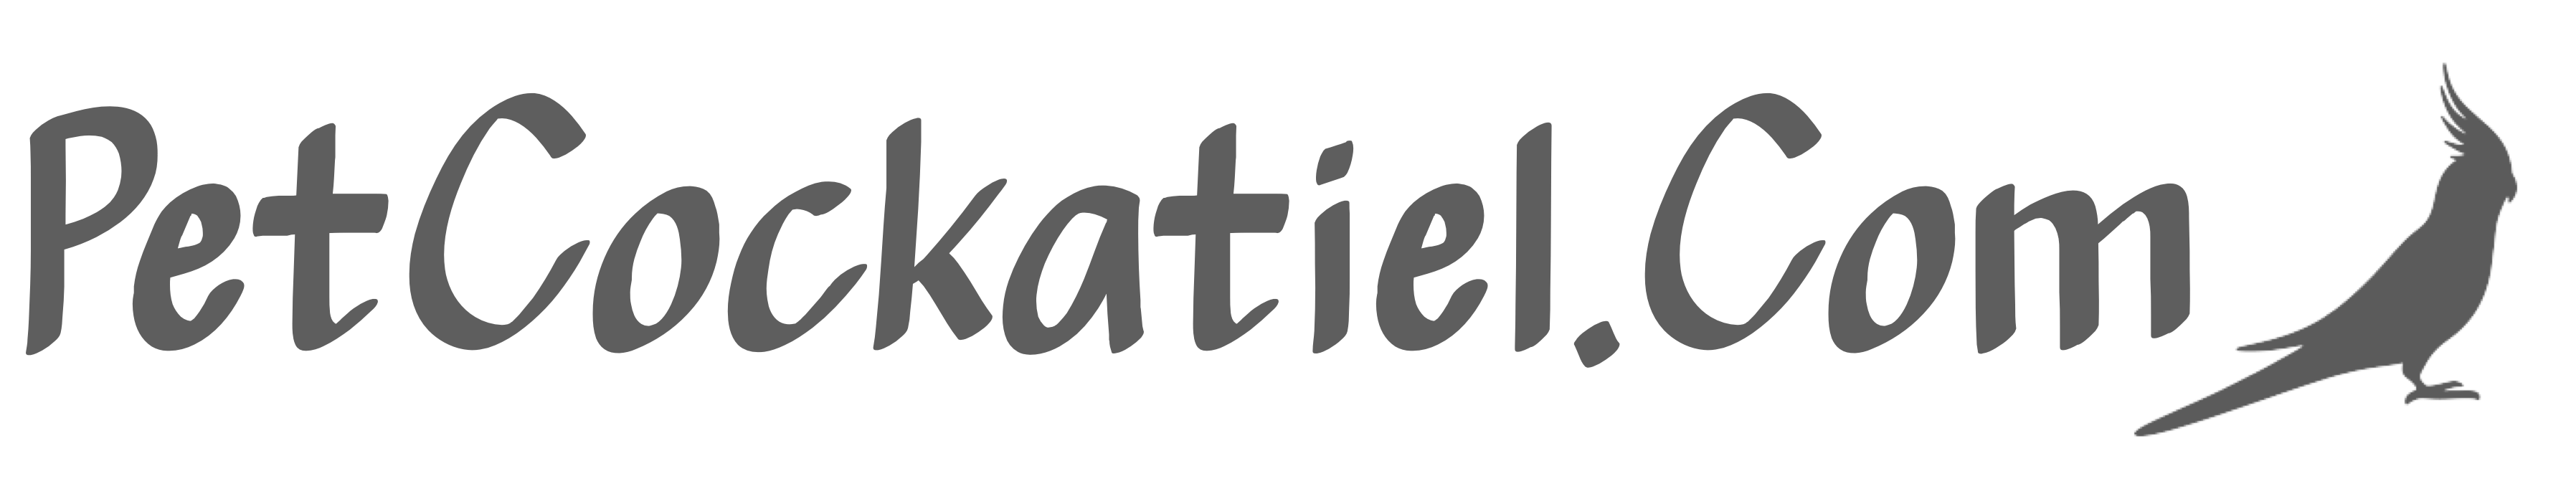 Pet Cockatiel logo